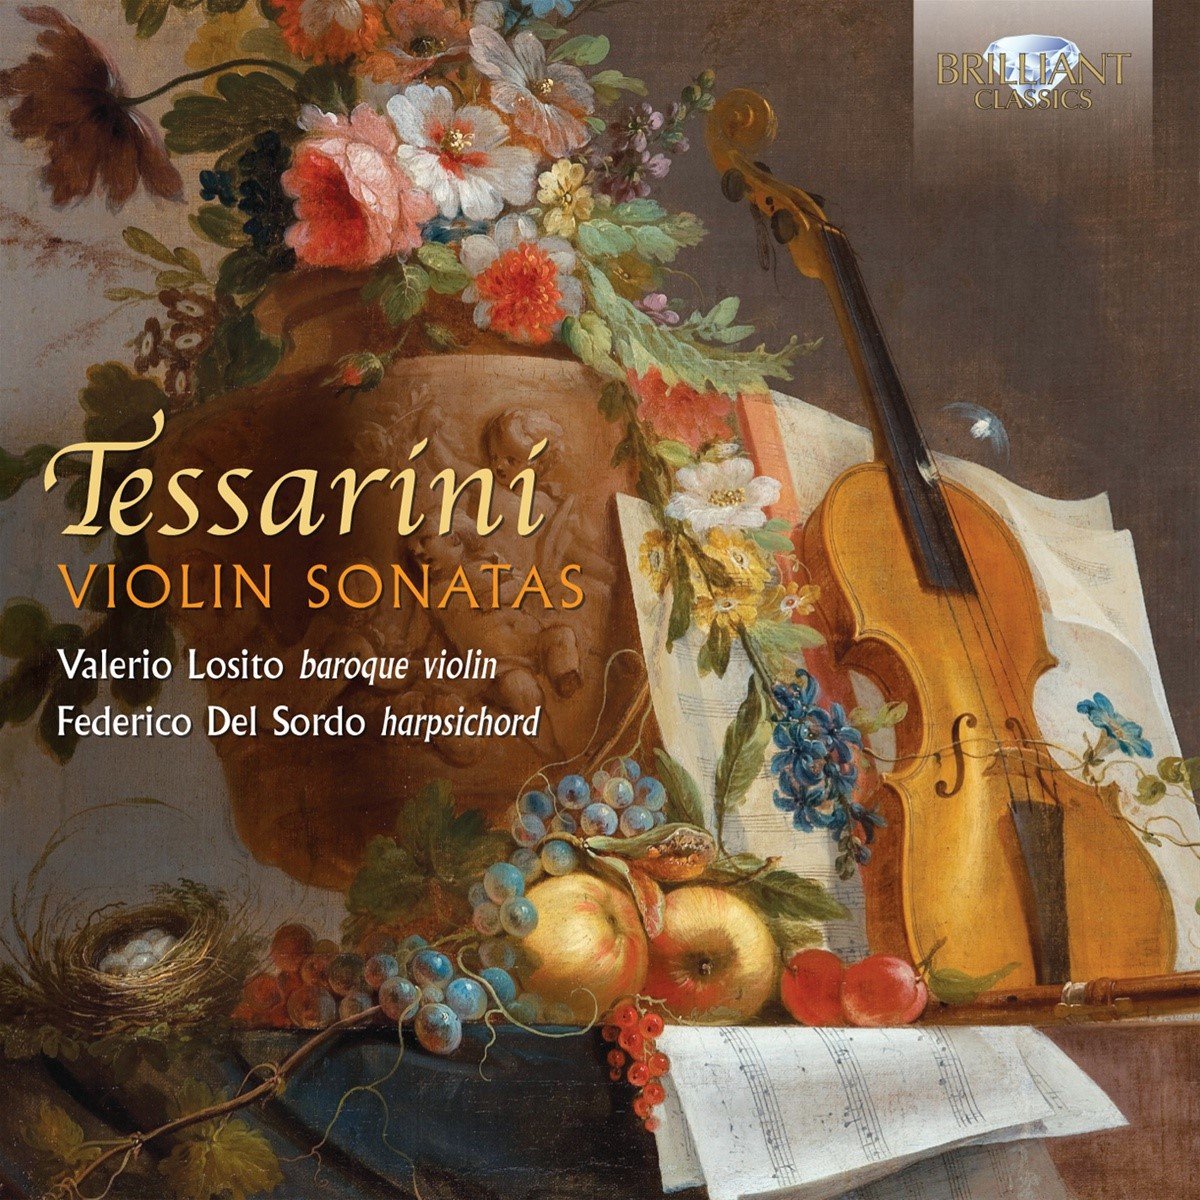 Valerio Losito & Federico del Sordo - Tessarini: Violin Sonatas (CD) - Valerio Losito & Federico Del Sordo